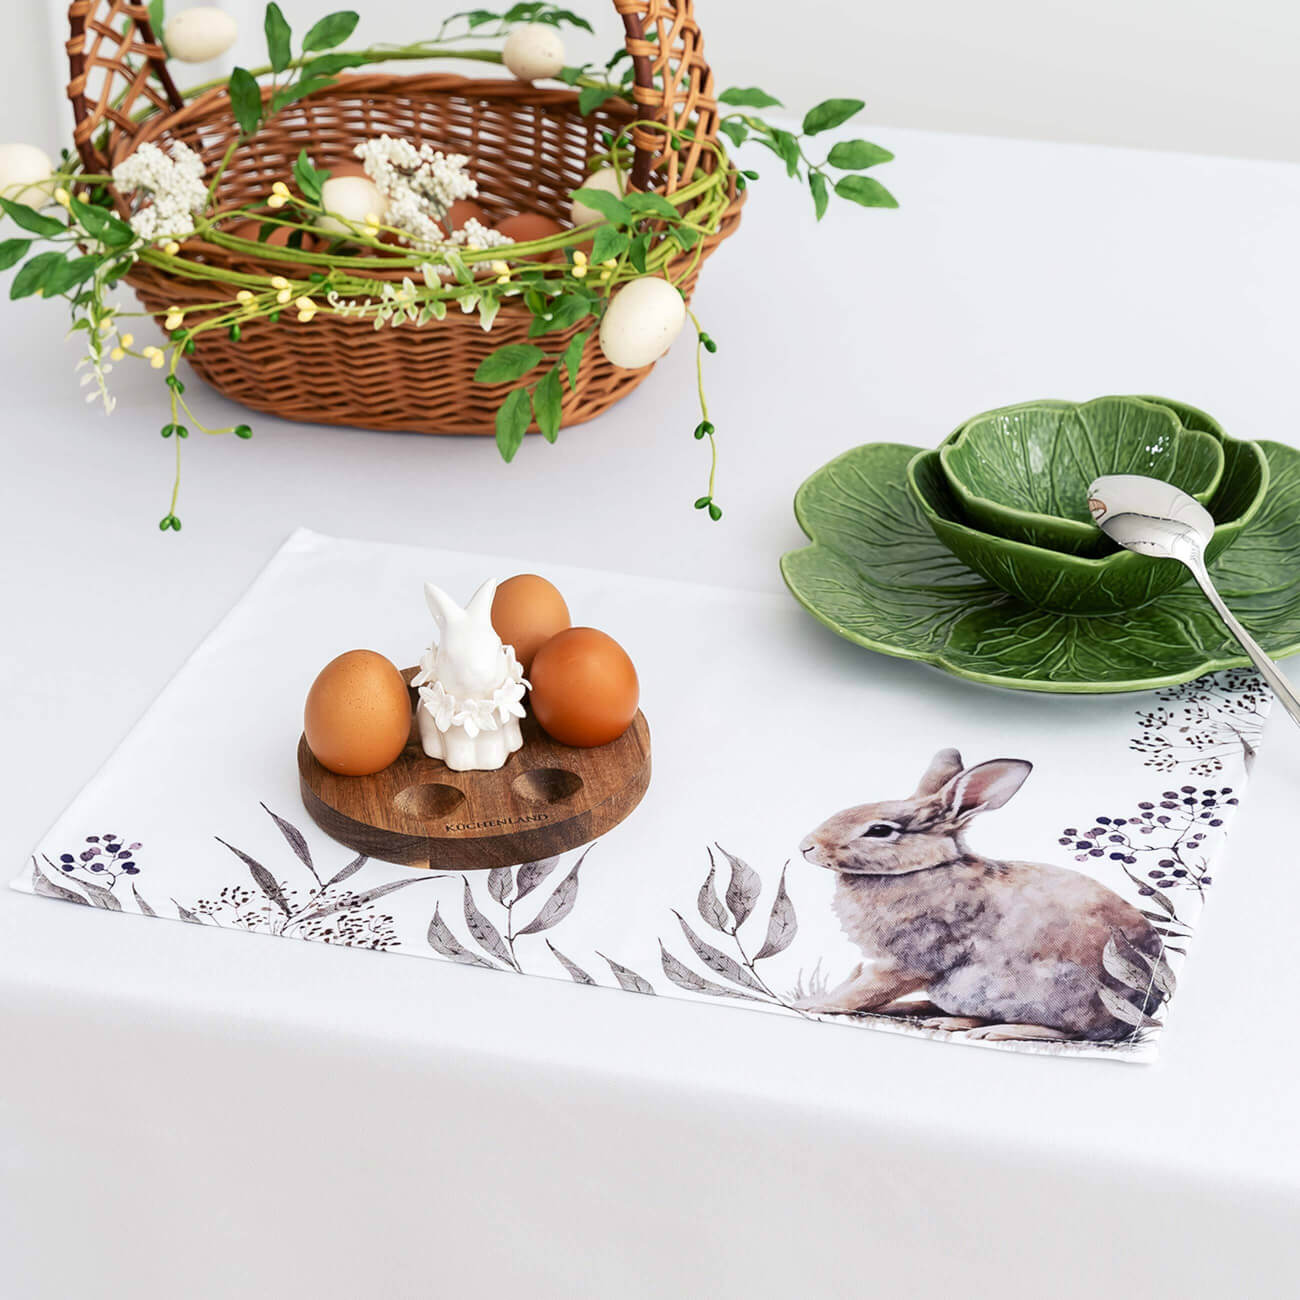 Салфетка под приборы, 30x45 см, полиэстер, белая, Кролик в листве, Natural Easter салфетка под приборы 38 см полиэстер круглая белая графичный кролик rotary print